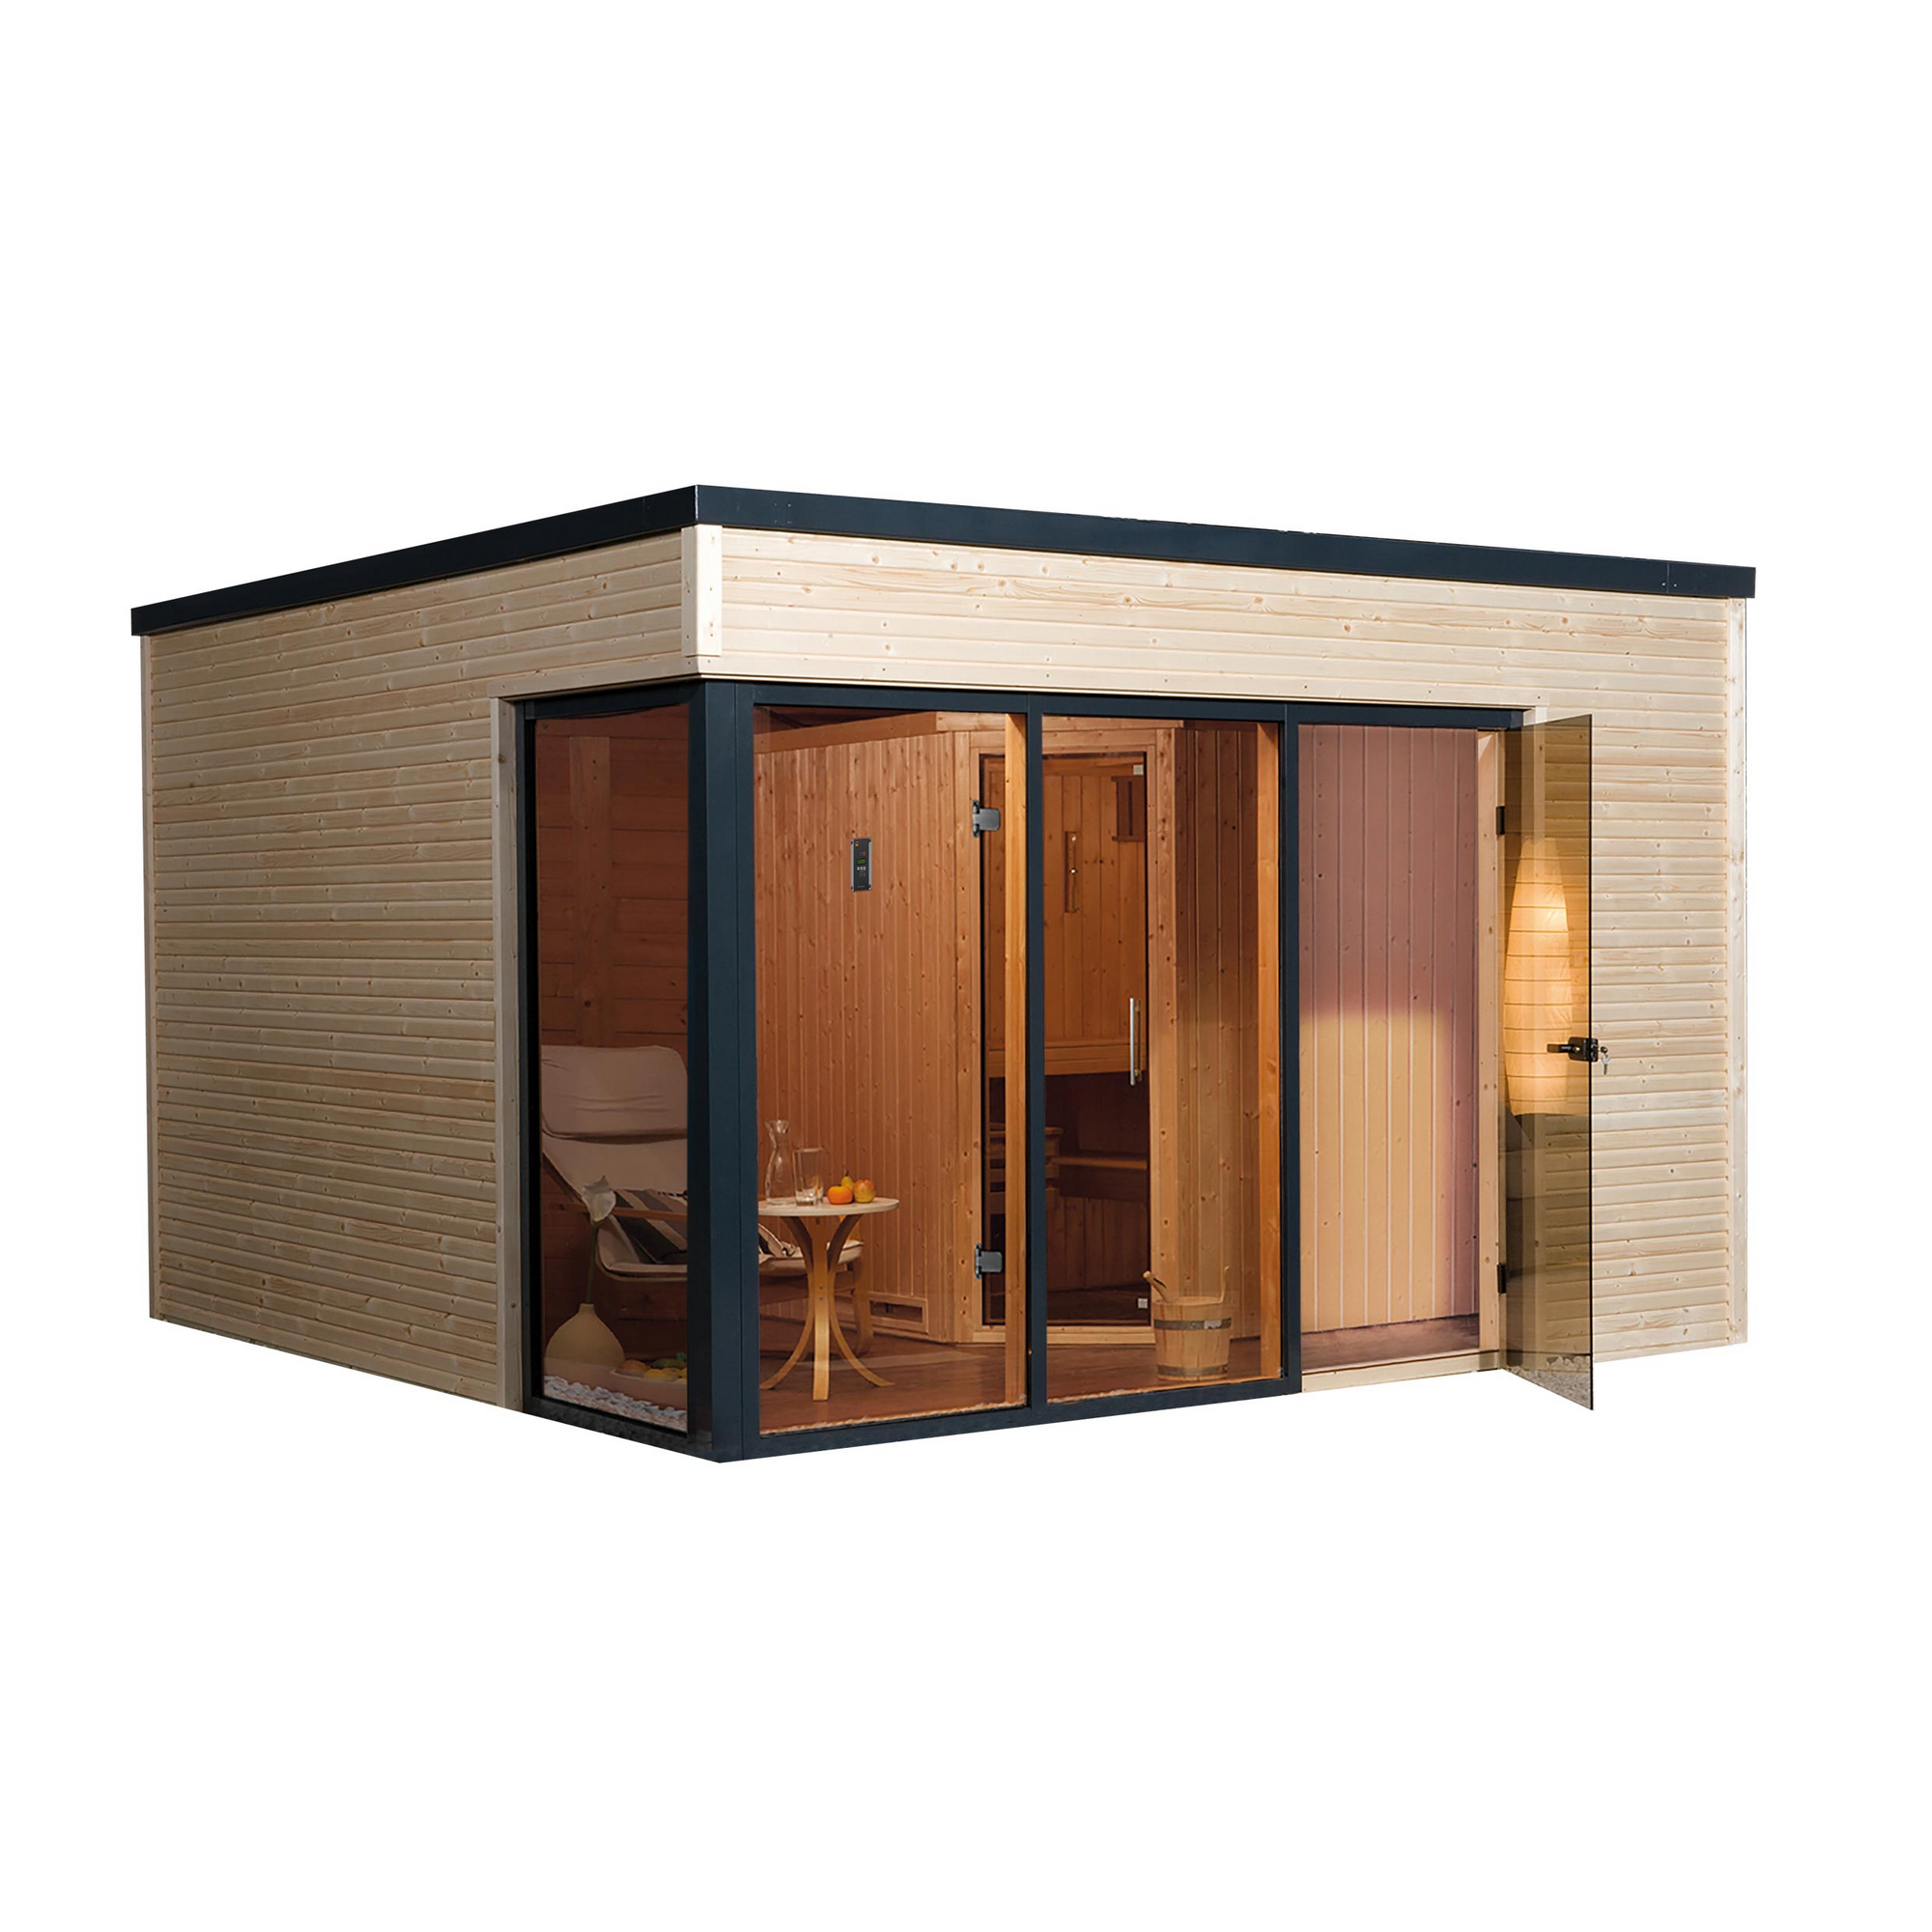 Design-Saunahaus 'Cubilis' mit Sauna Varberg 3 und 7,5 kW BioS-Ofenset, Steuerung 380 x 300 x 249 cm + product picture